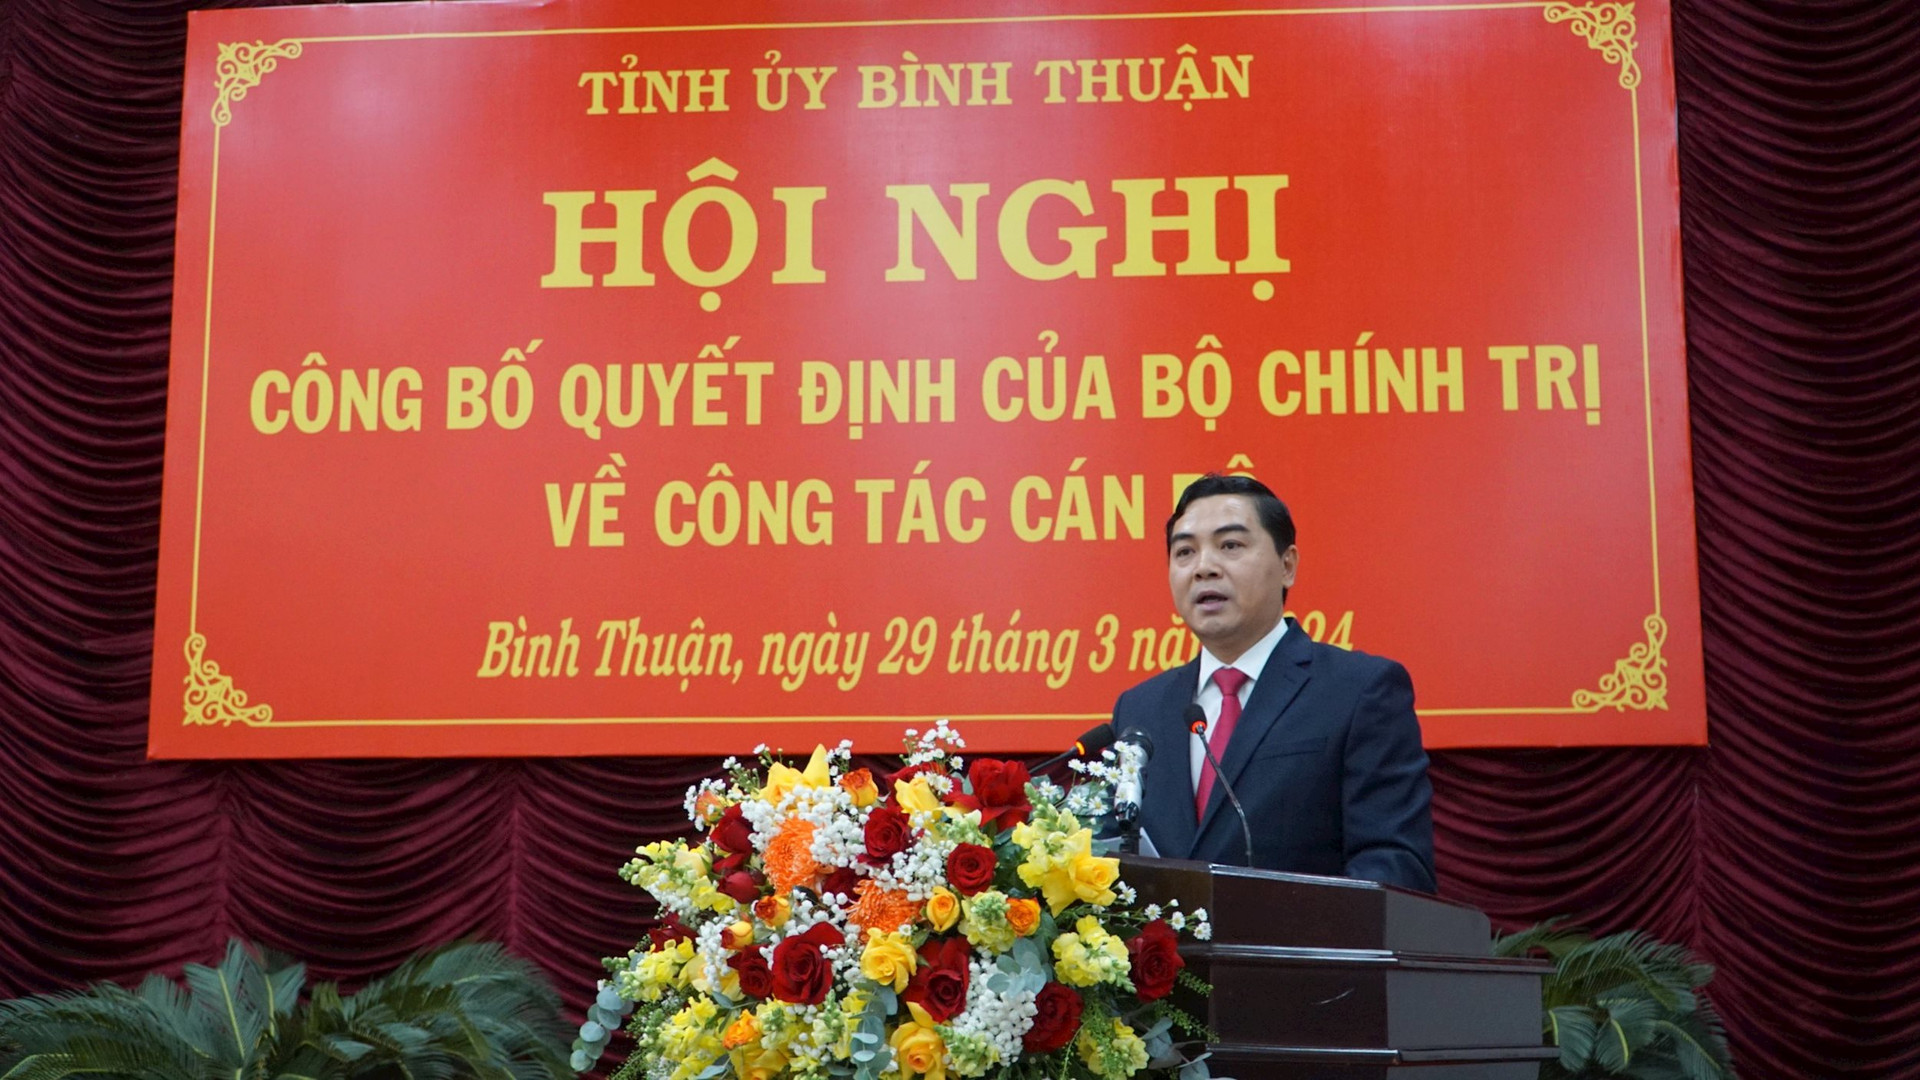 Bộ Chính trị chuẩn y ông Nguyễn Hoài Anh giữ chức Bí thư Tỉnh ủy Bình Thuận- Ảnh 2.